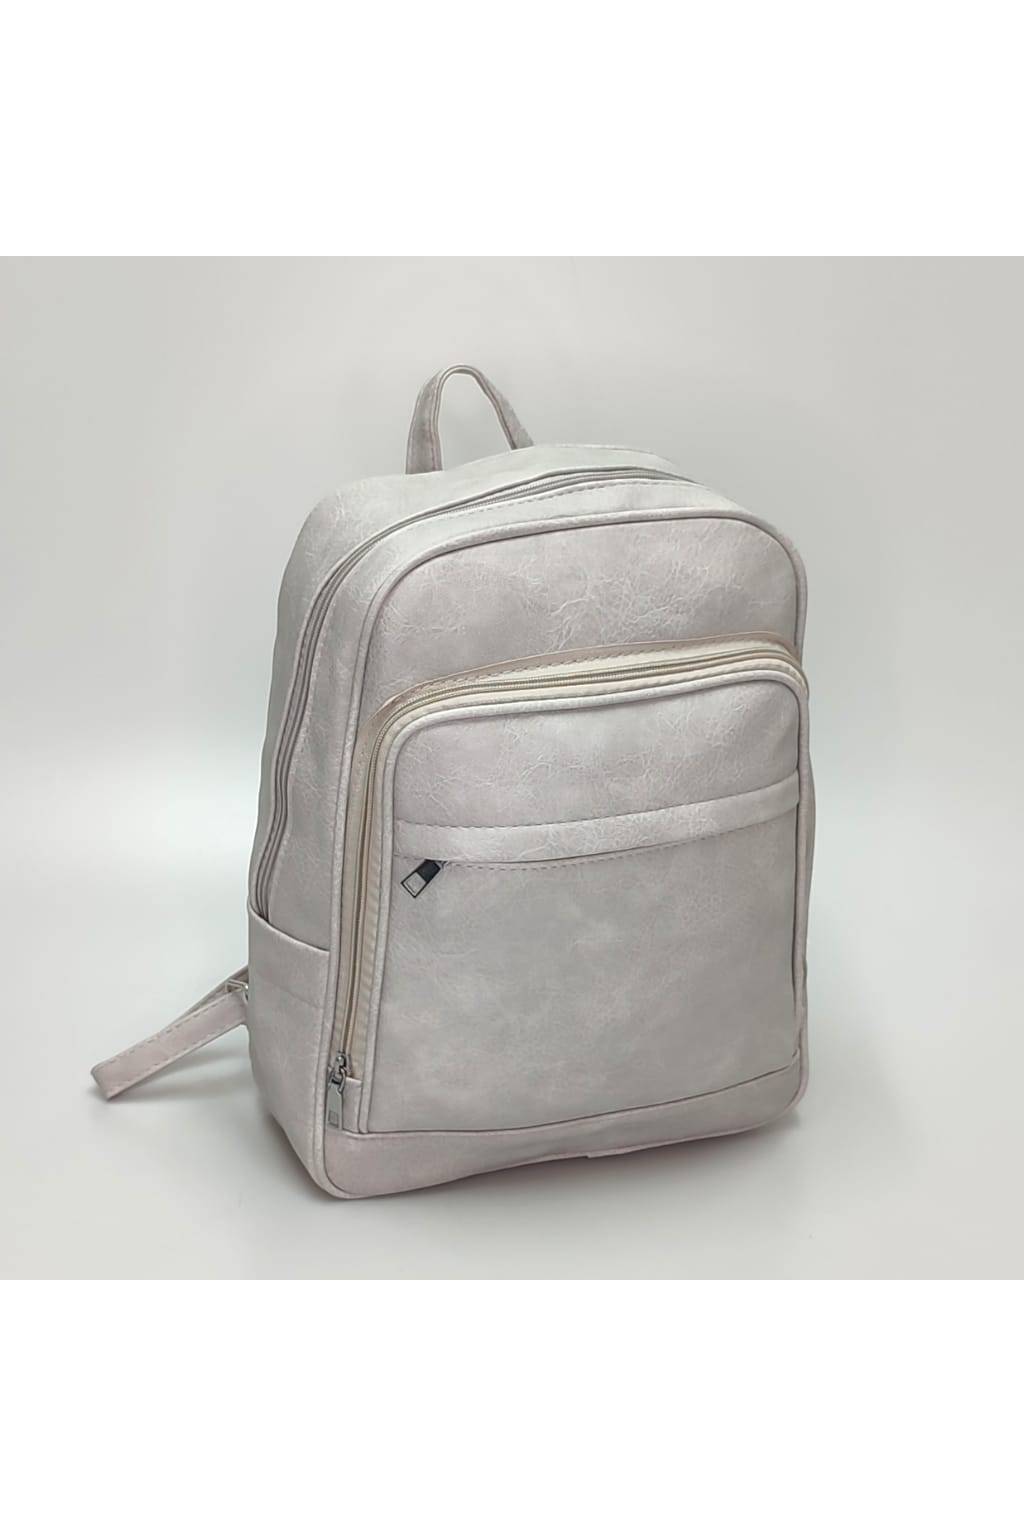 Dámsky ruksak 666L svetlo sivý www.kabelky vypredaj (1)